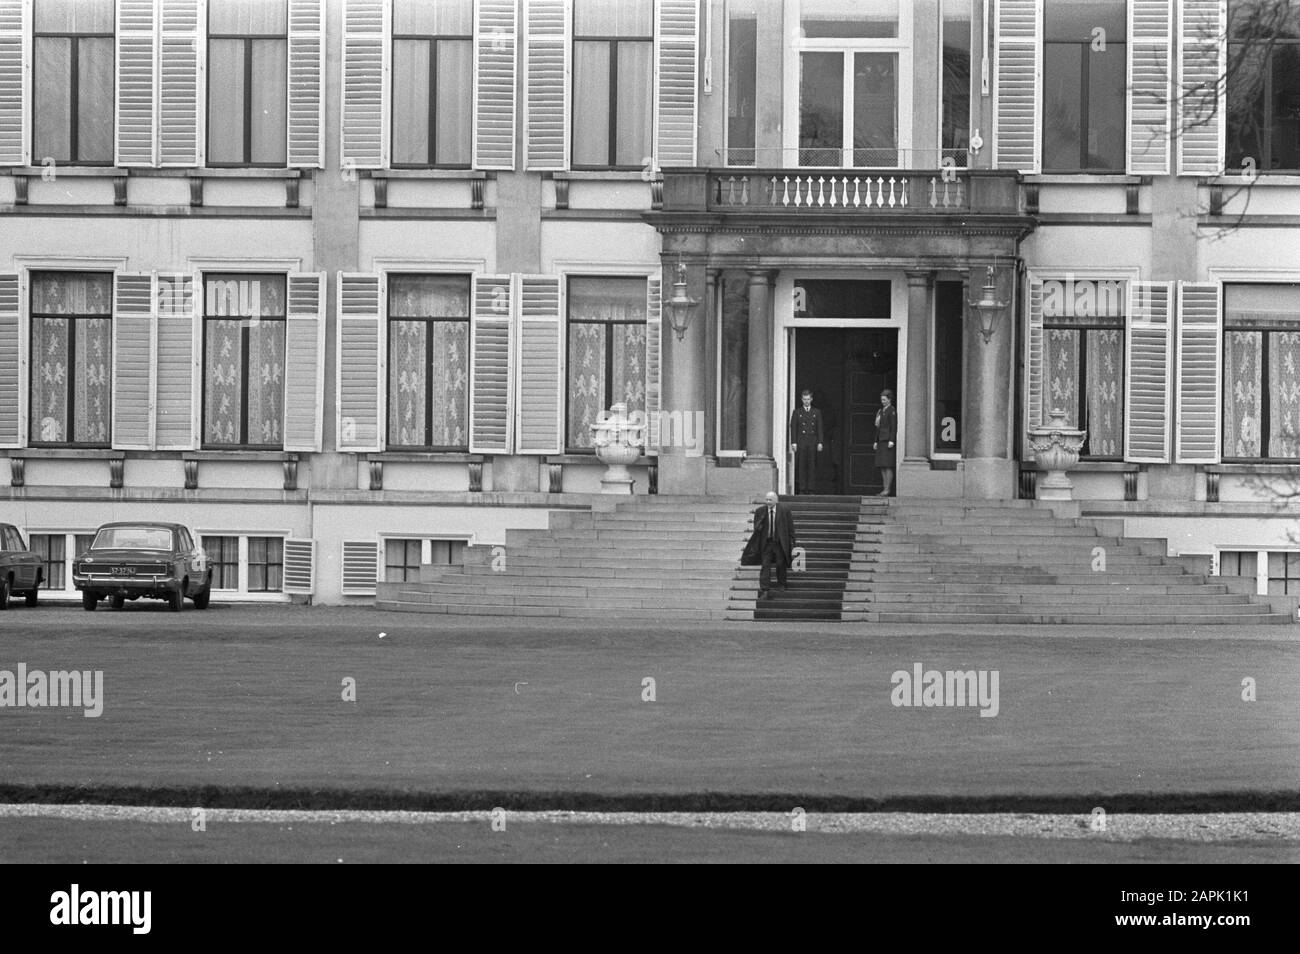 Queen Juliana riceve presidenti di gruppo al Palace Soestdijk Descrizione: Den Uyl alla partenza sulle scale Data: 6 aprile 1973 Località: Soestdijk, Utrecht Parole Chiave: Presidenti di gruppo, regine, ricevute Nome personale: Uyl, Joop den Foto Stock